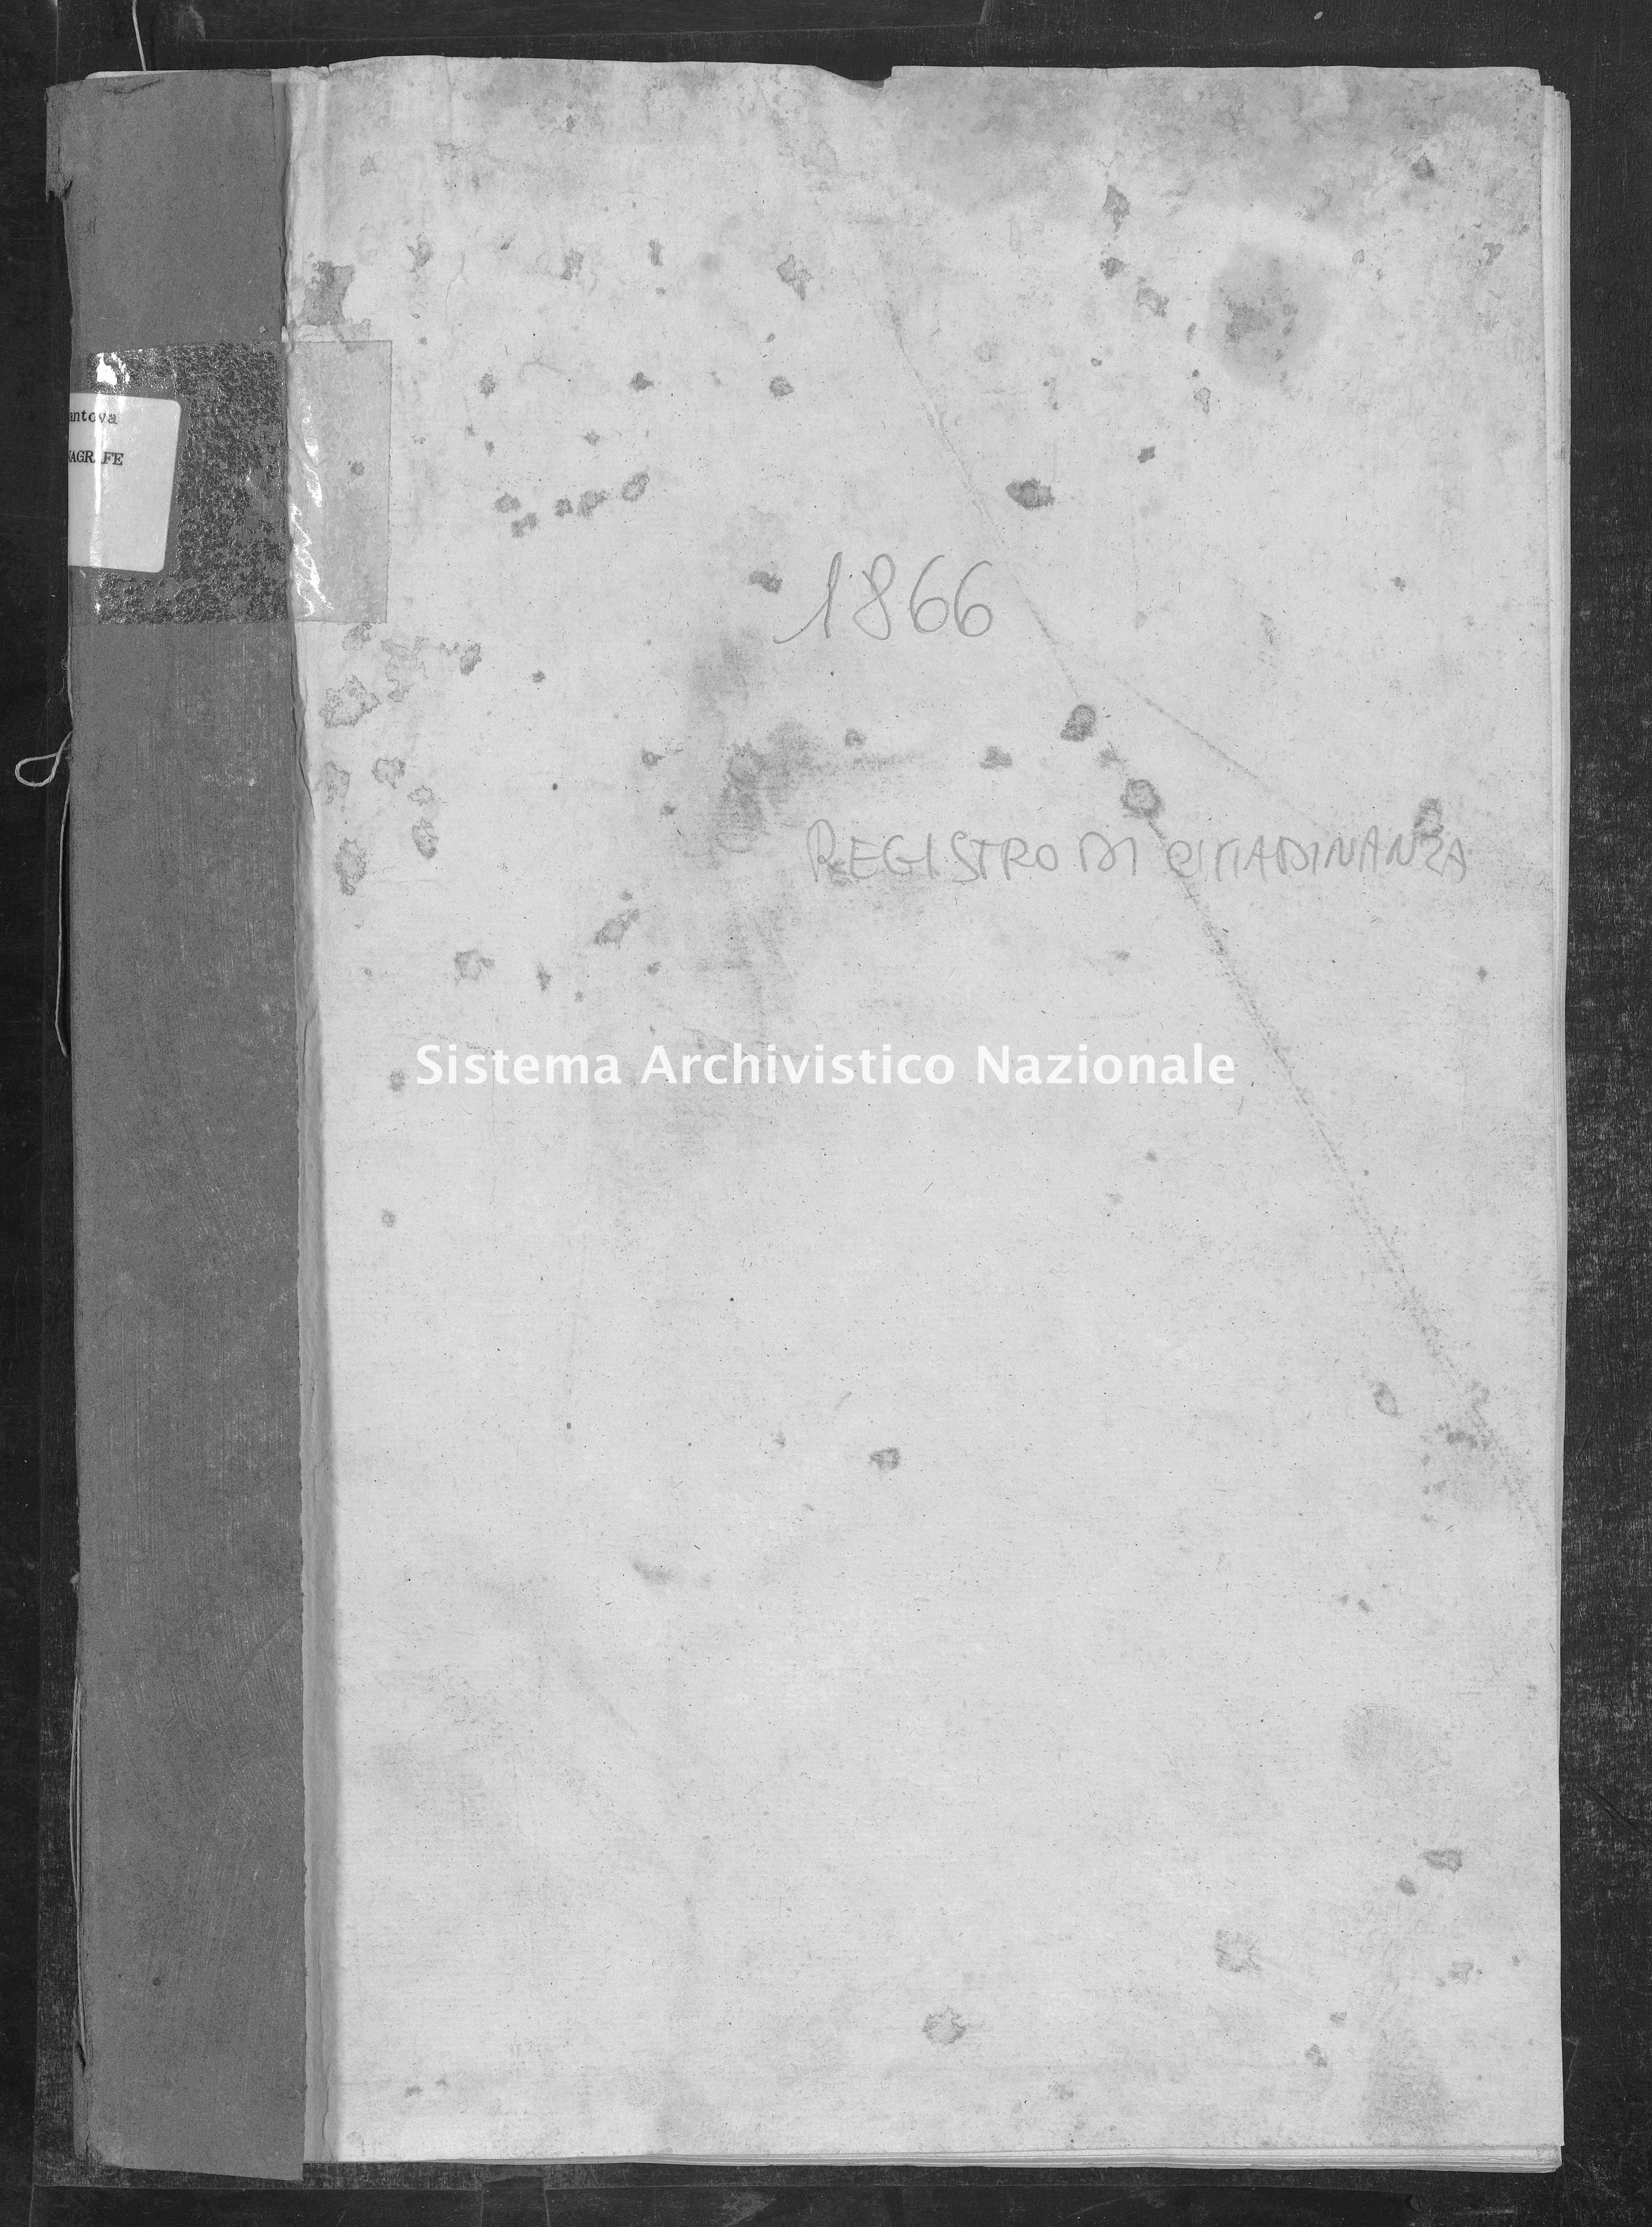 Archivio di stato di Mantova - Tribunale di Mantova: Anagrafe e stato civile - Castellucchio - Cittadinanze - 1866 - 1509 -